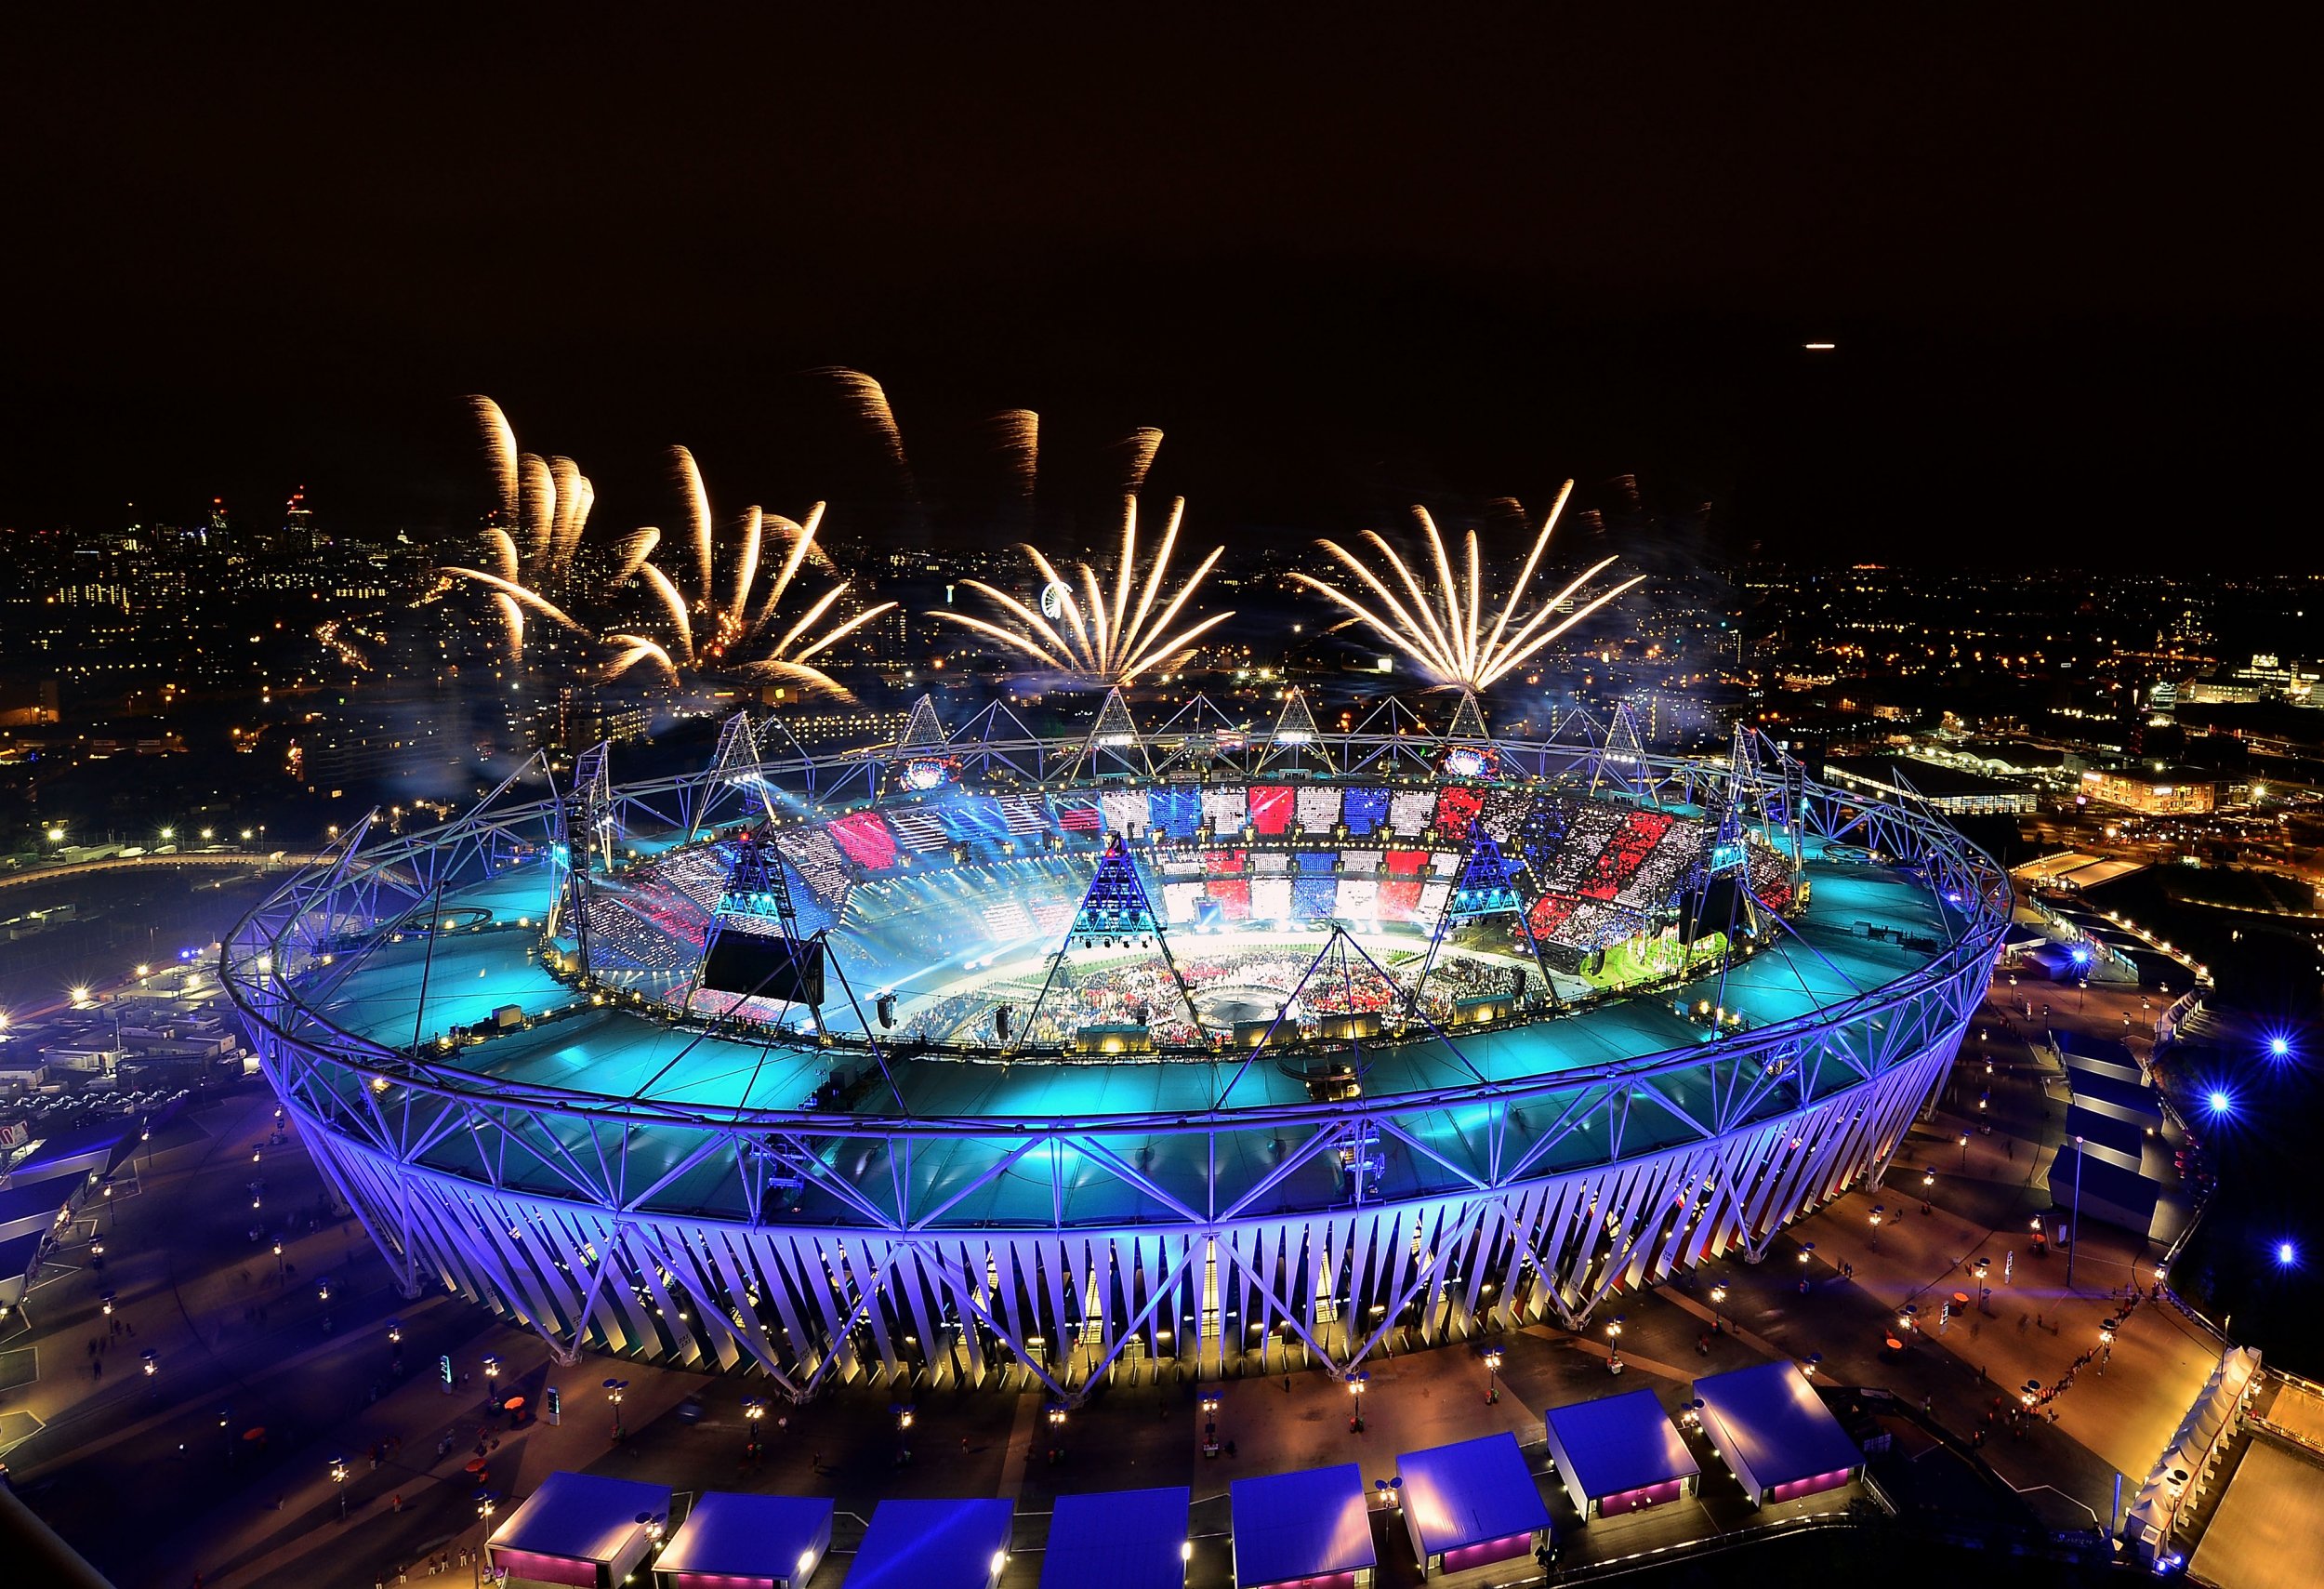 Rio 2016 Opening Ceremony: